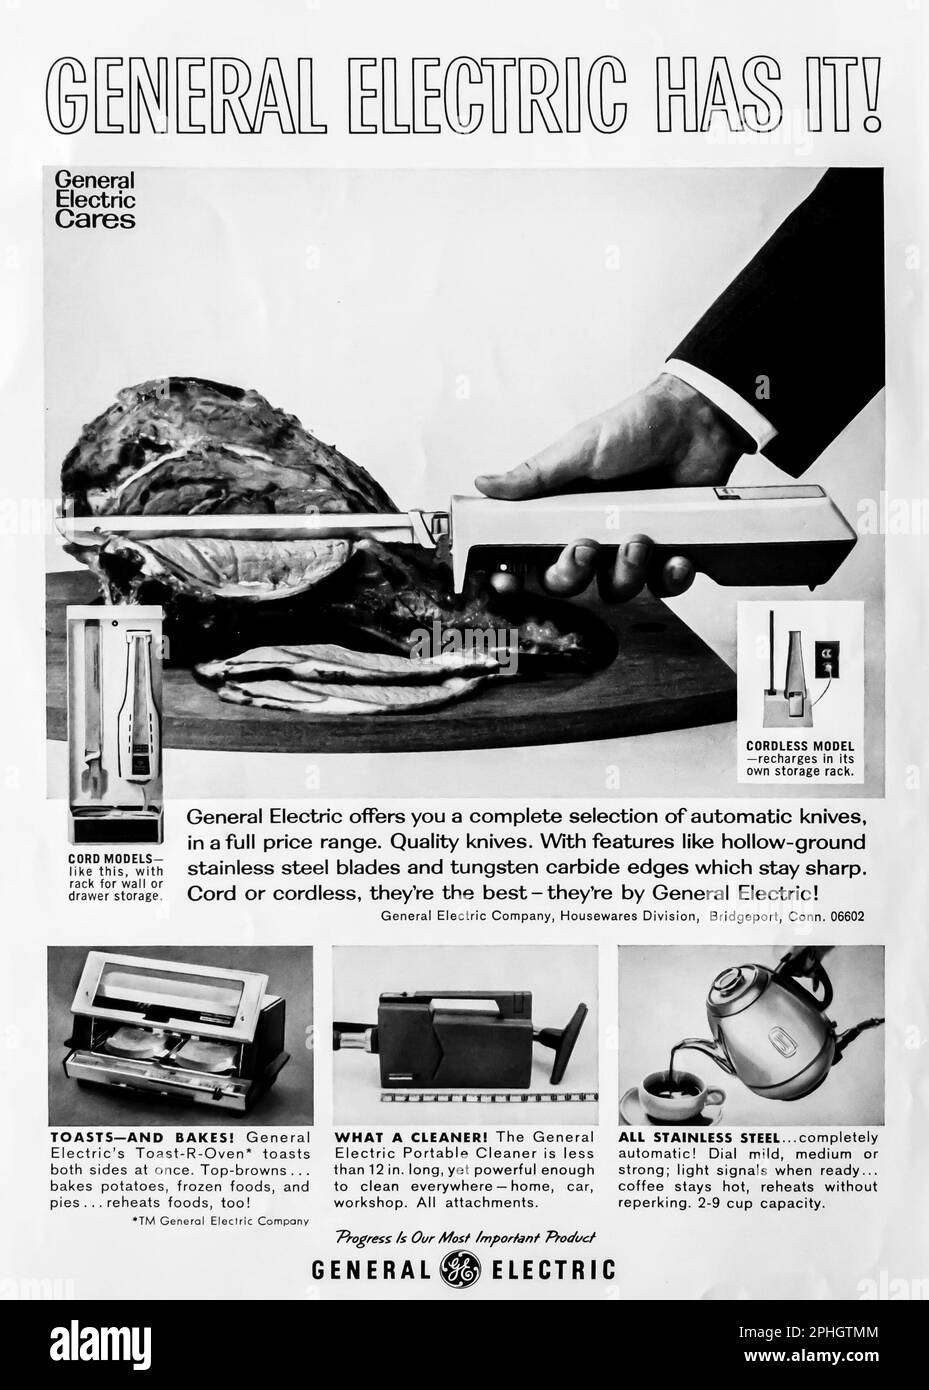 Publicité sur les appareils électroniques General Electric dans un magazine NatGeo juin 1966 Banque D'Images